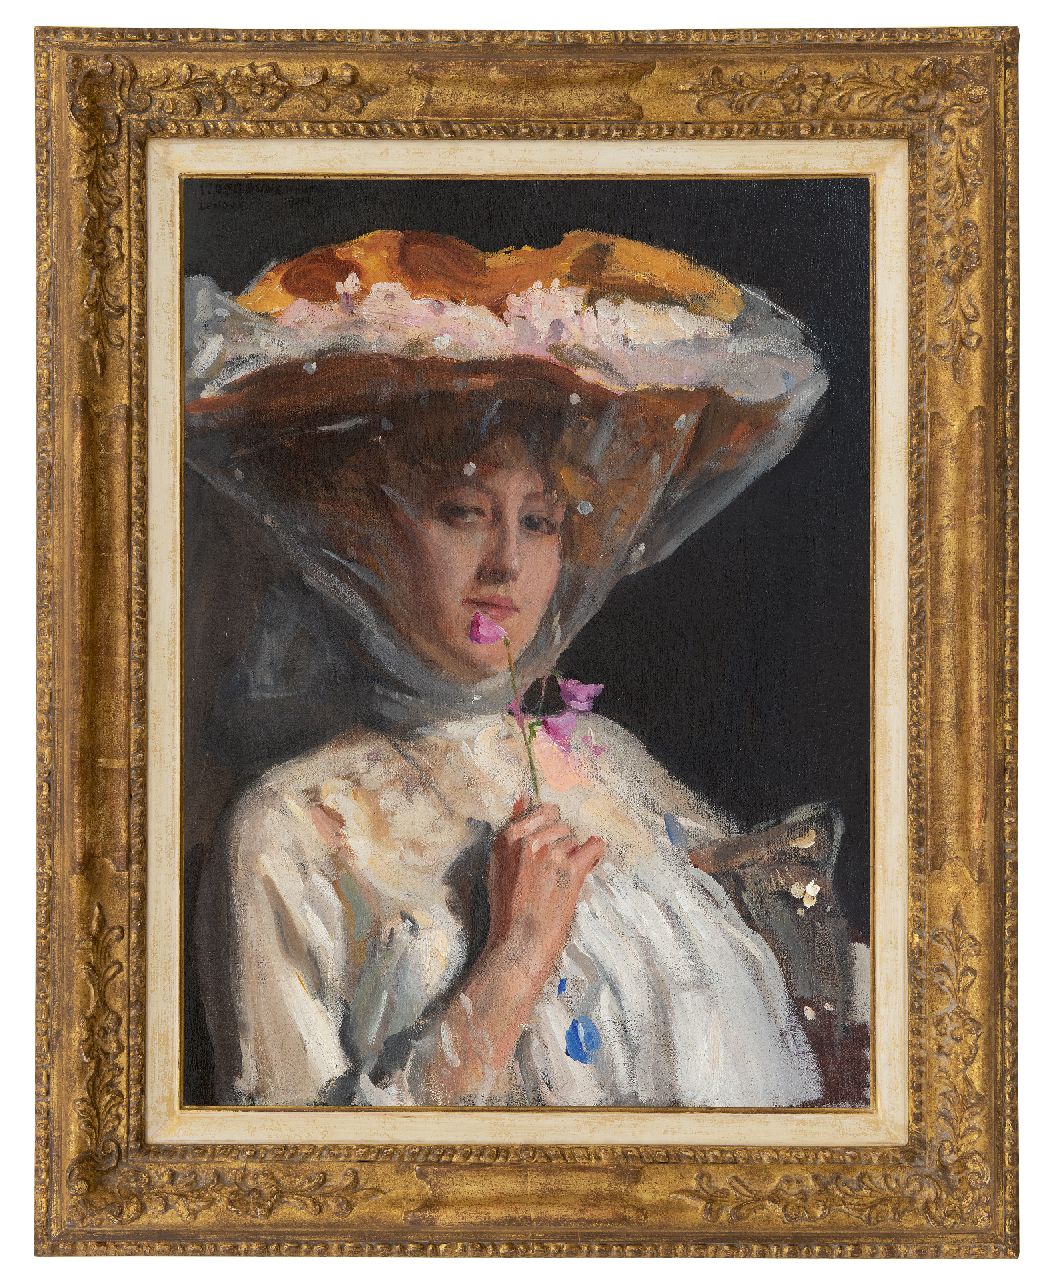 Oppenheimer J.  | Joseph Oppenheimer | Schilderijen te koop aangeboden | Vrouw met lathyrusbloem, olieverf op doek 68,8 x 51,3 cm, gesigneerd linksboven en gedateerd 'London' 1904